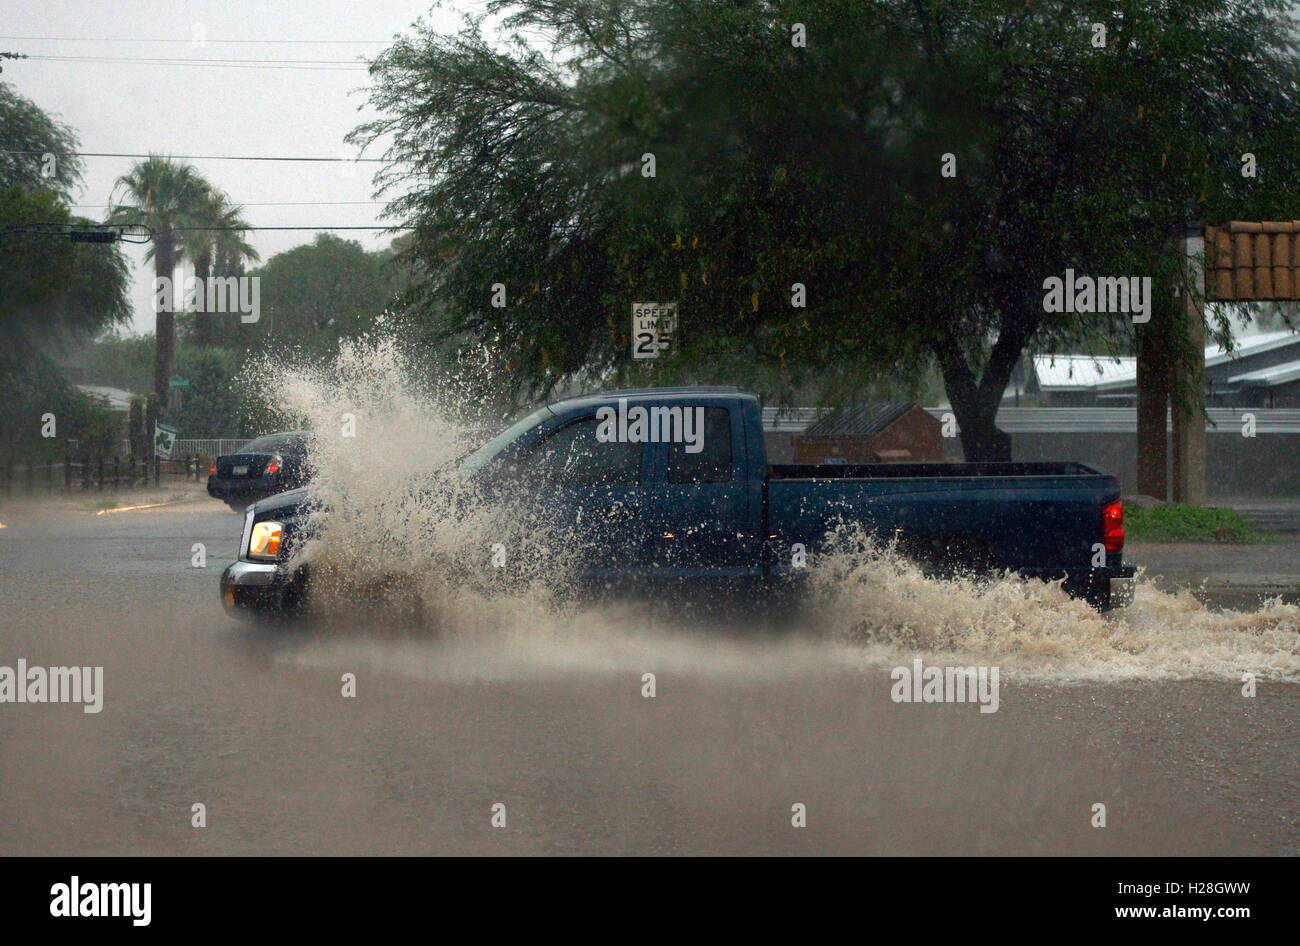 Camion fanno la loro strada attraverso strade allagate durante una tempesta di monsone, Deserto Sonoran, Tucson, Arizona, Stati Uniti. Foto Stock